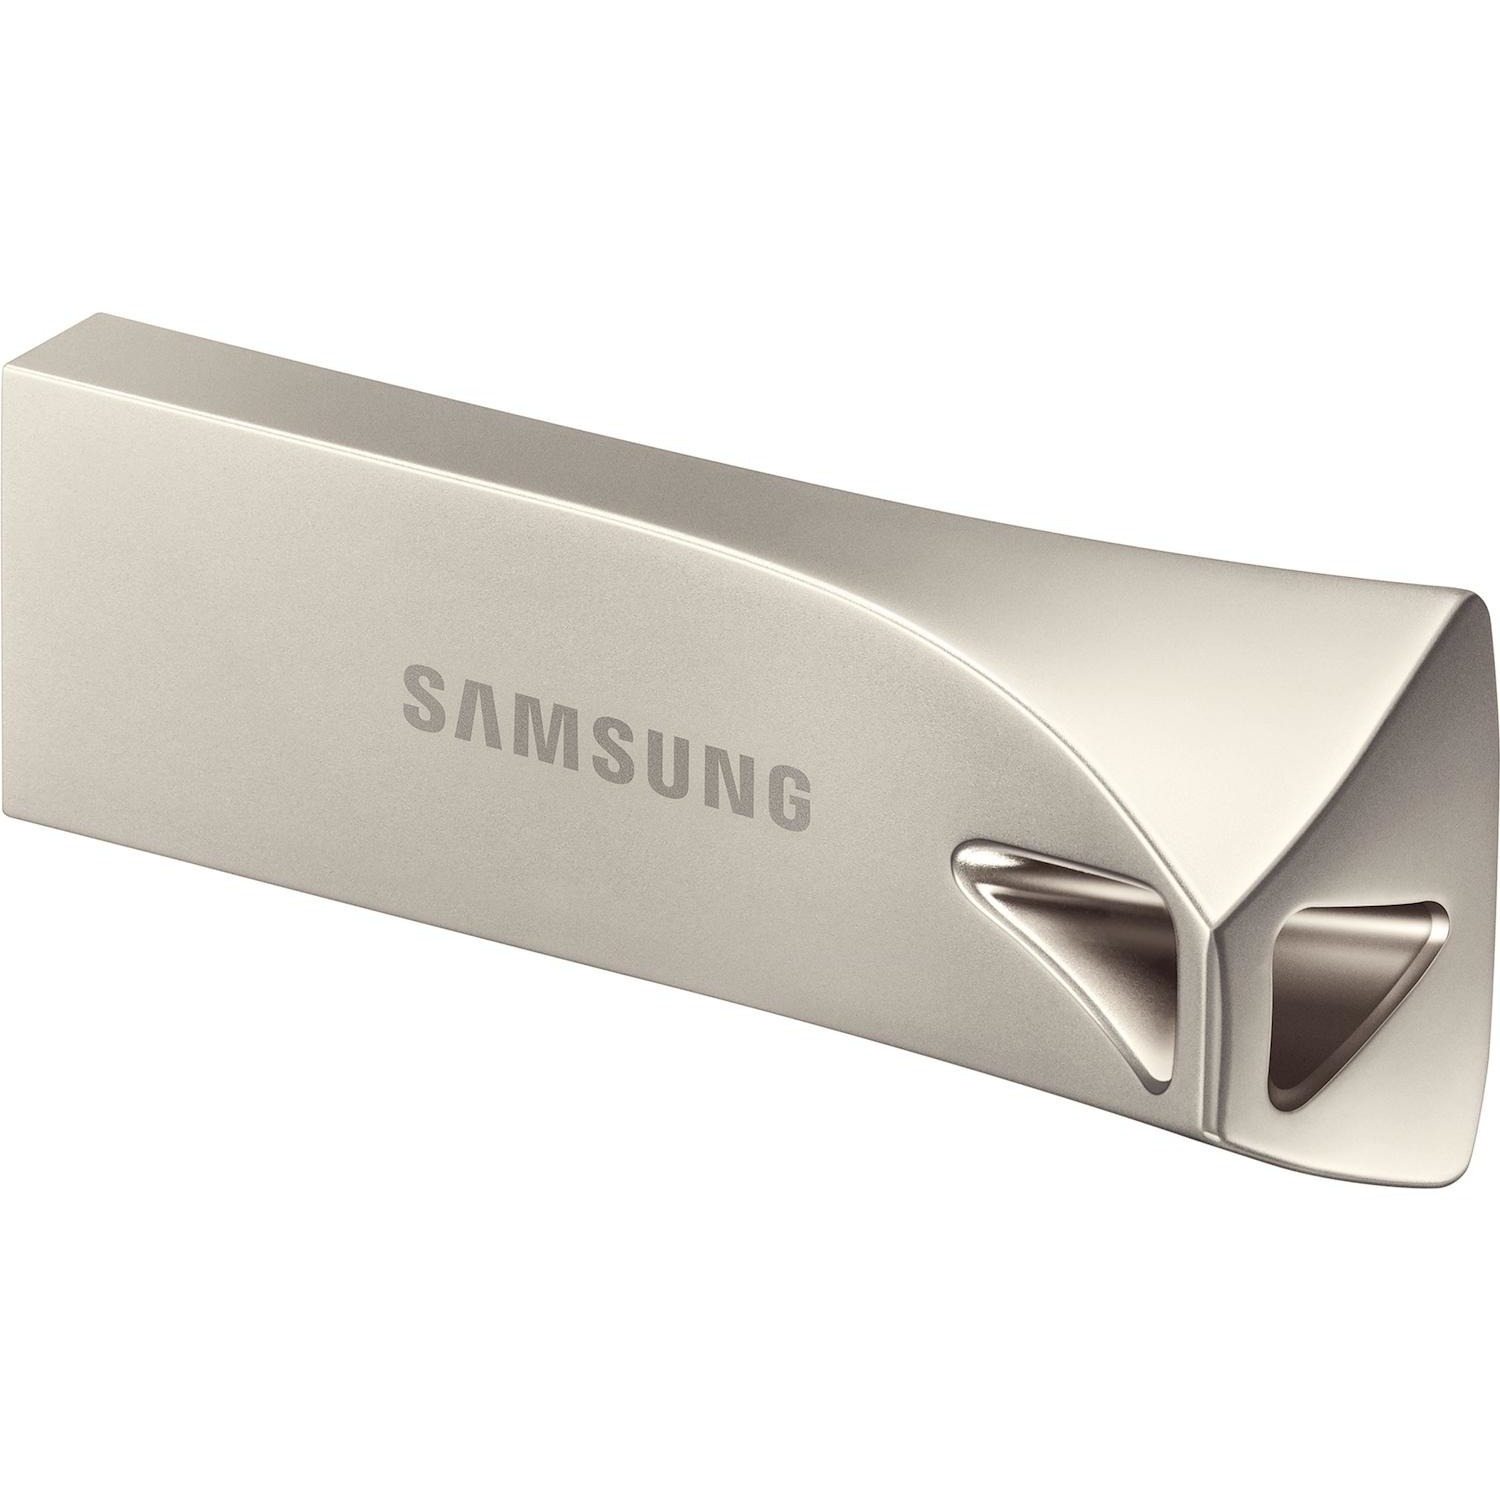 Immagine per Pen drive Samsung 128GB USB 3.1 champagne da DIMOStore